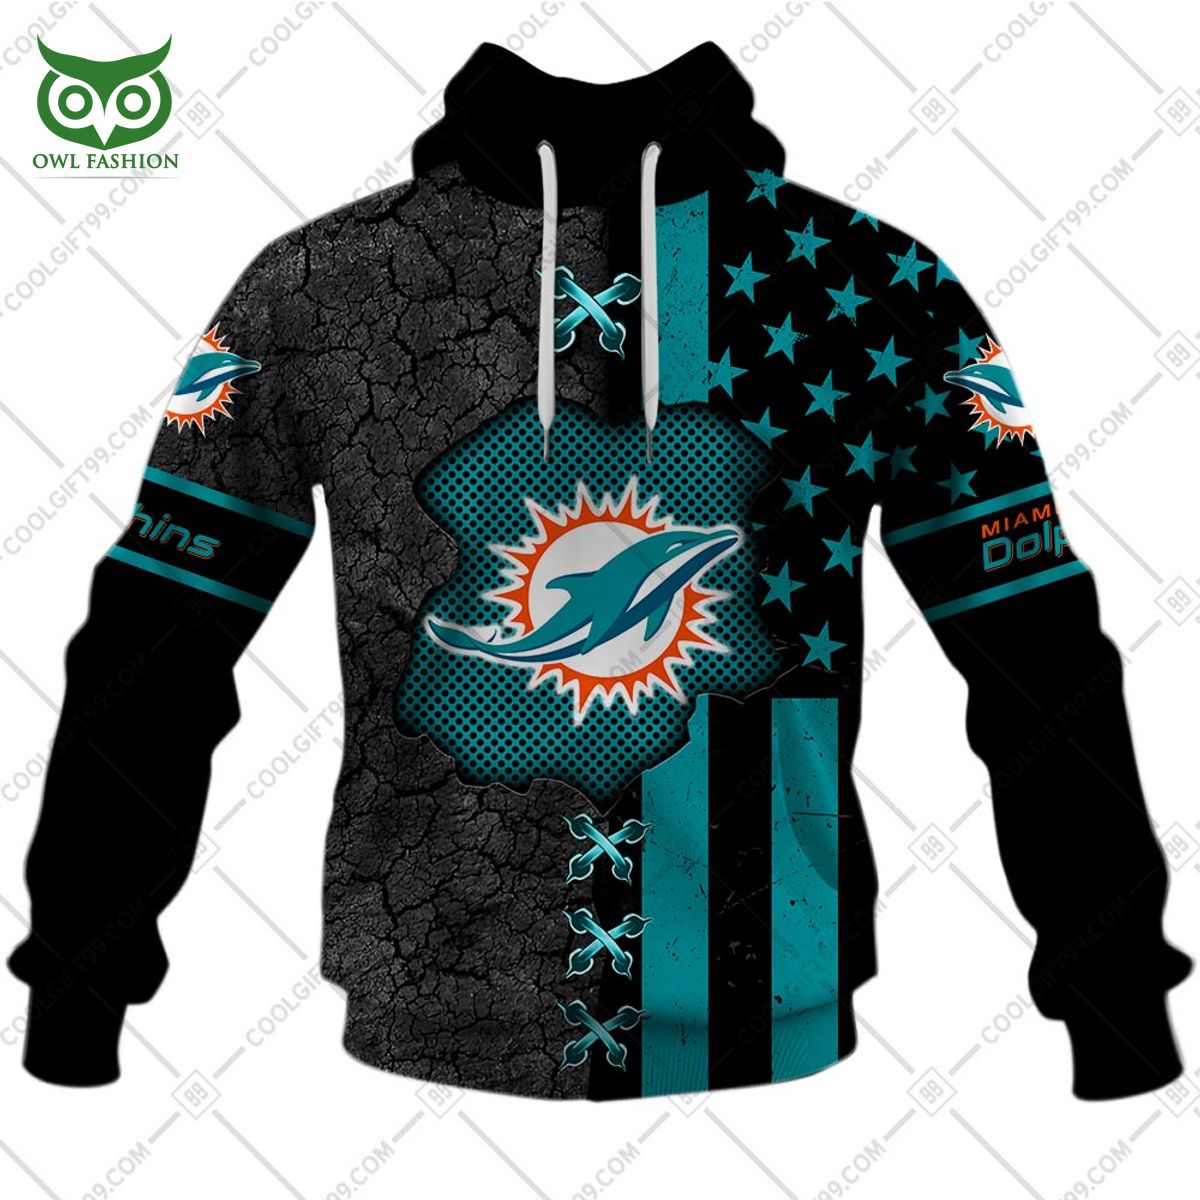 miami dolphins usa flag nfl custom printed hoodie shirt 2 gVjlt.jpg